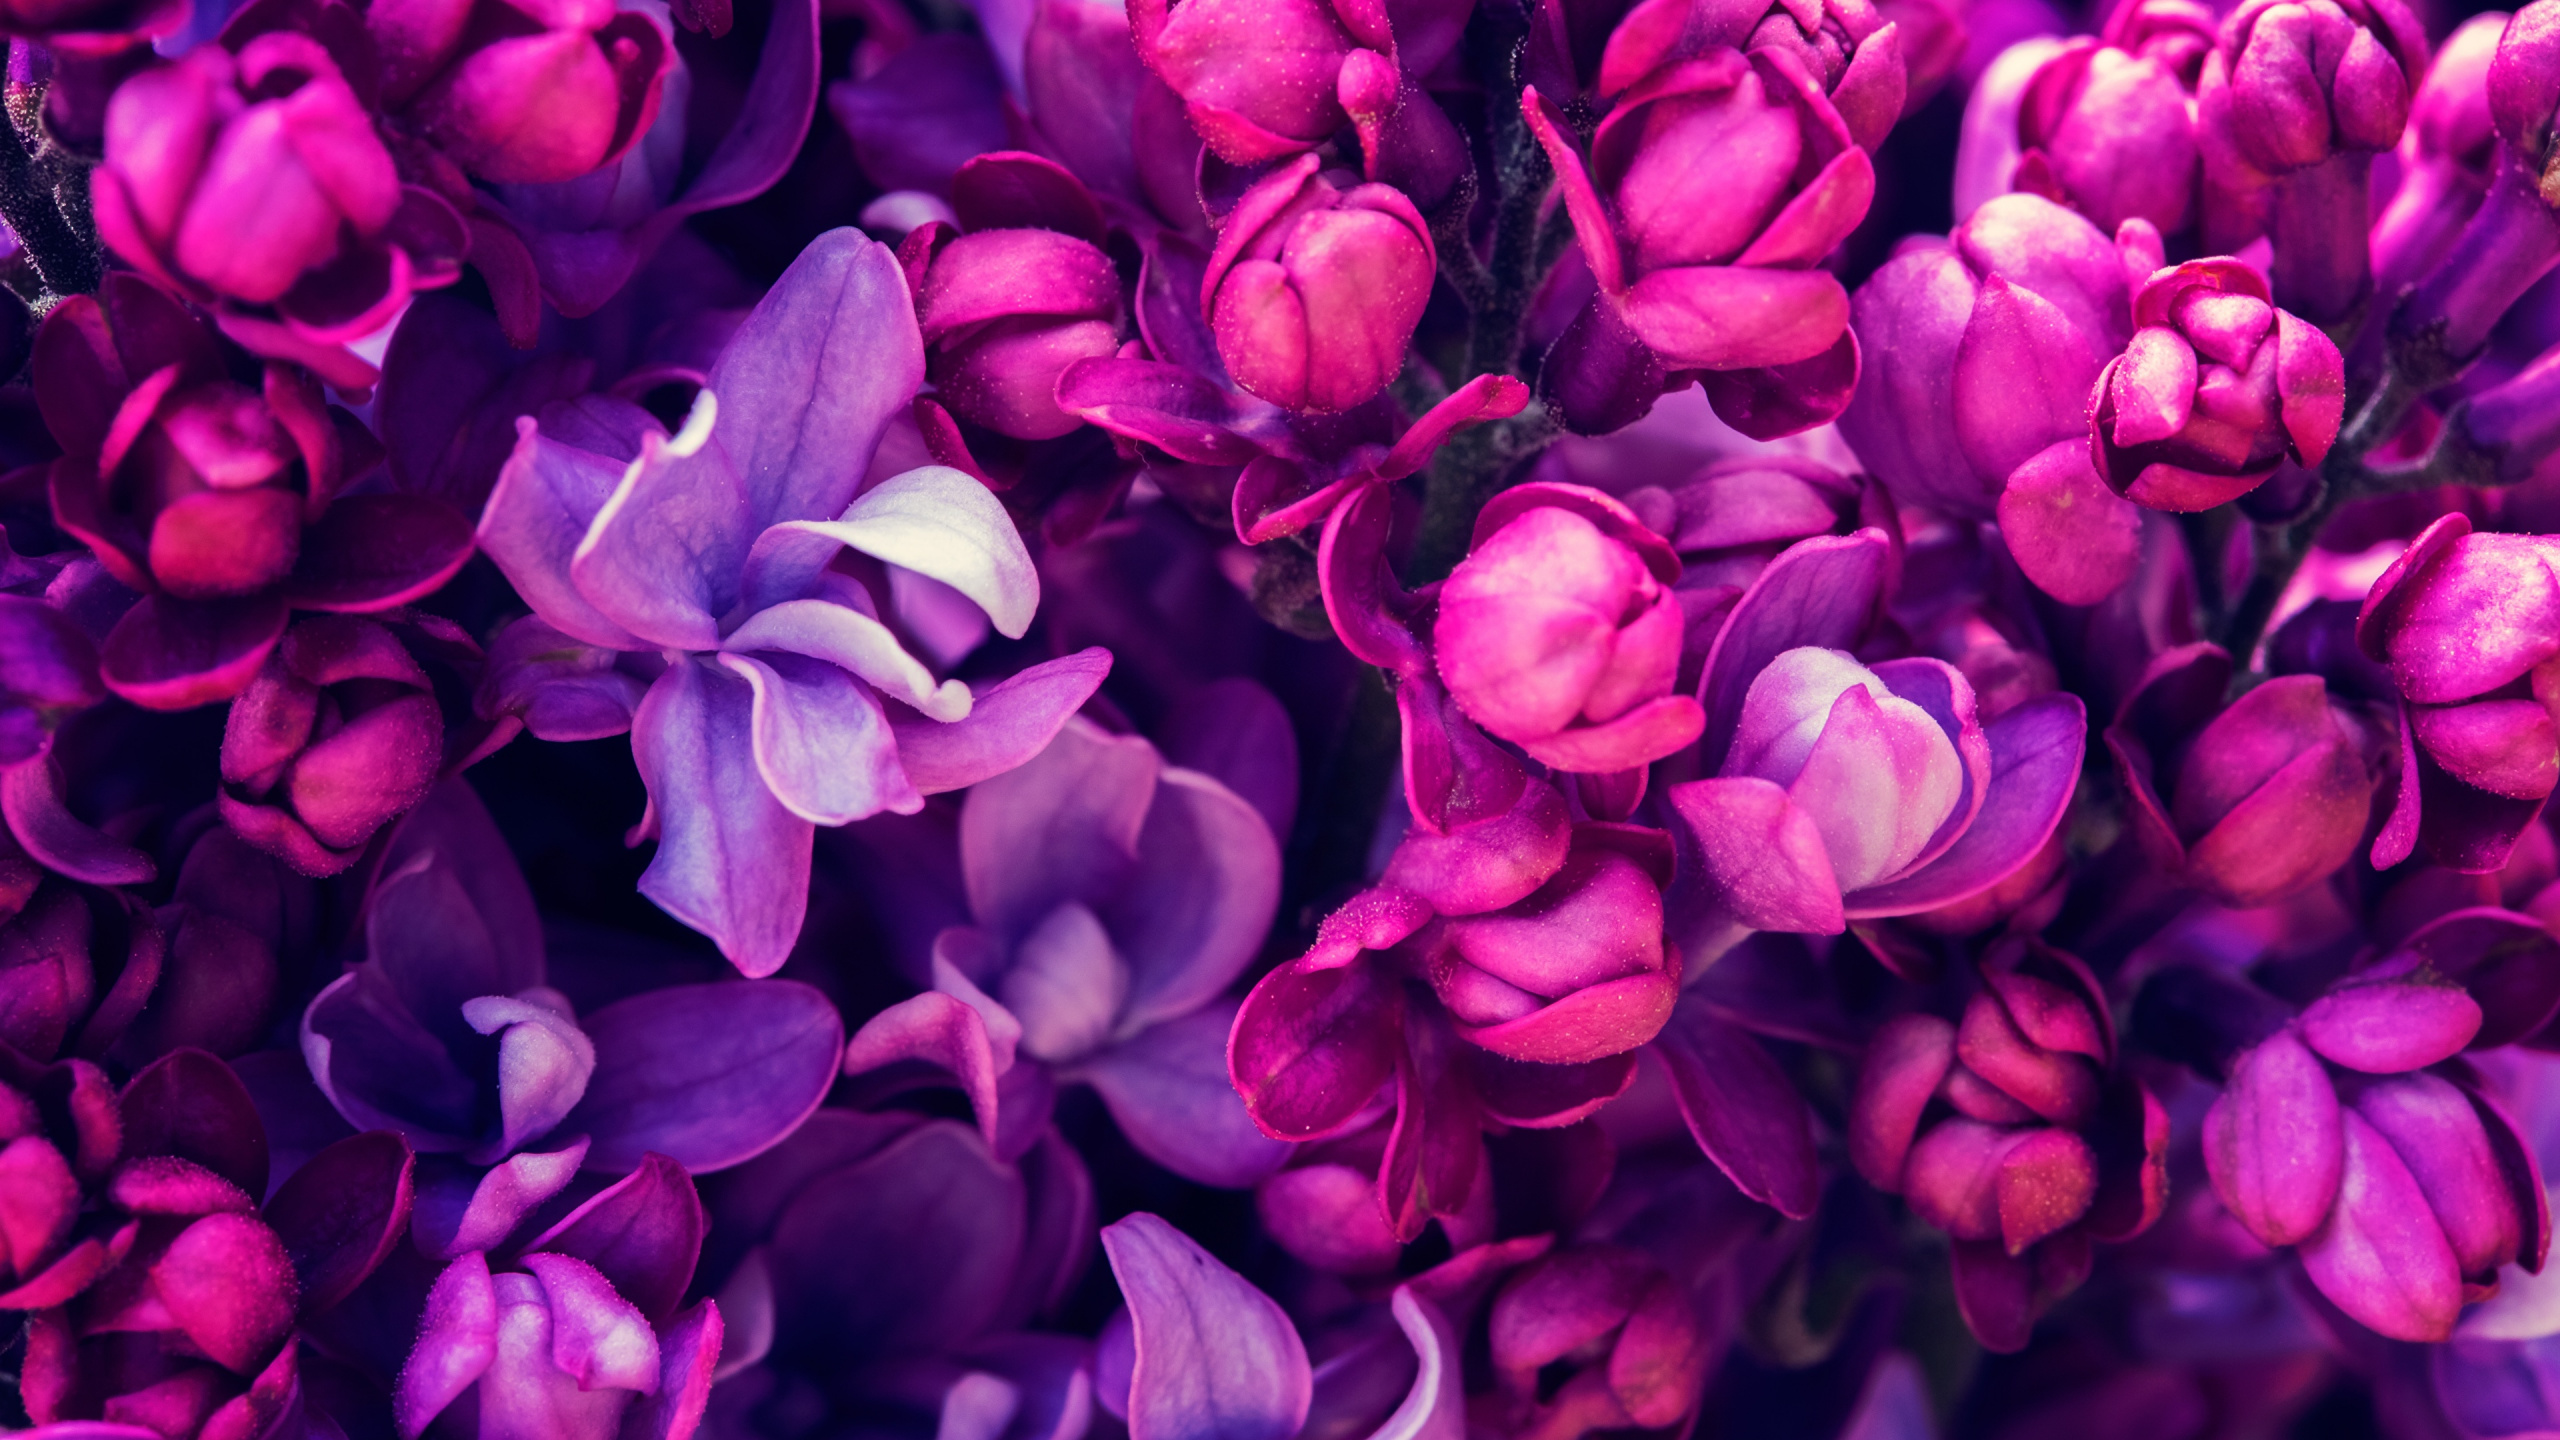 Fleurs Violettes en Macro Shot. Wallpaper in 2560x1440 Resolution